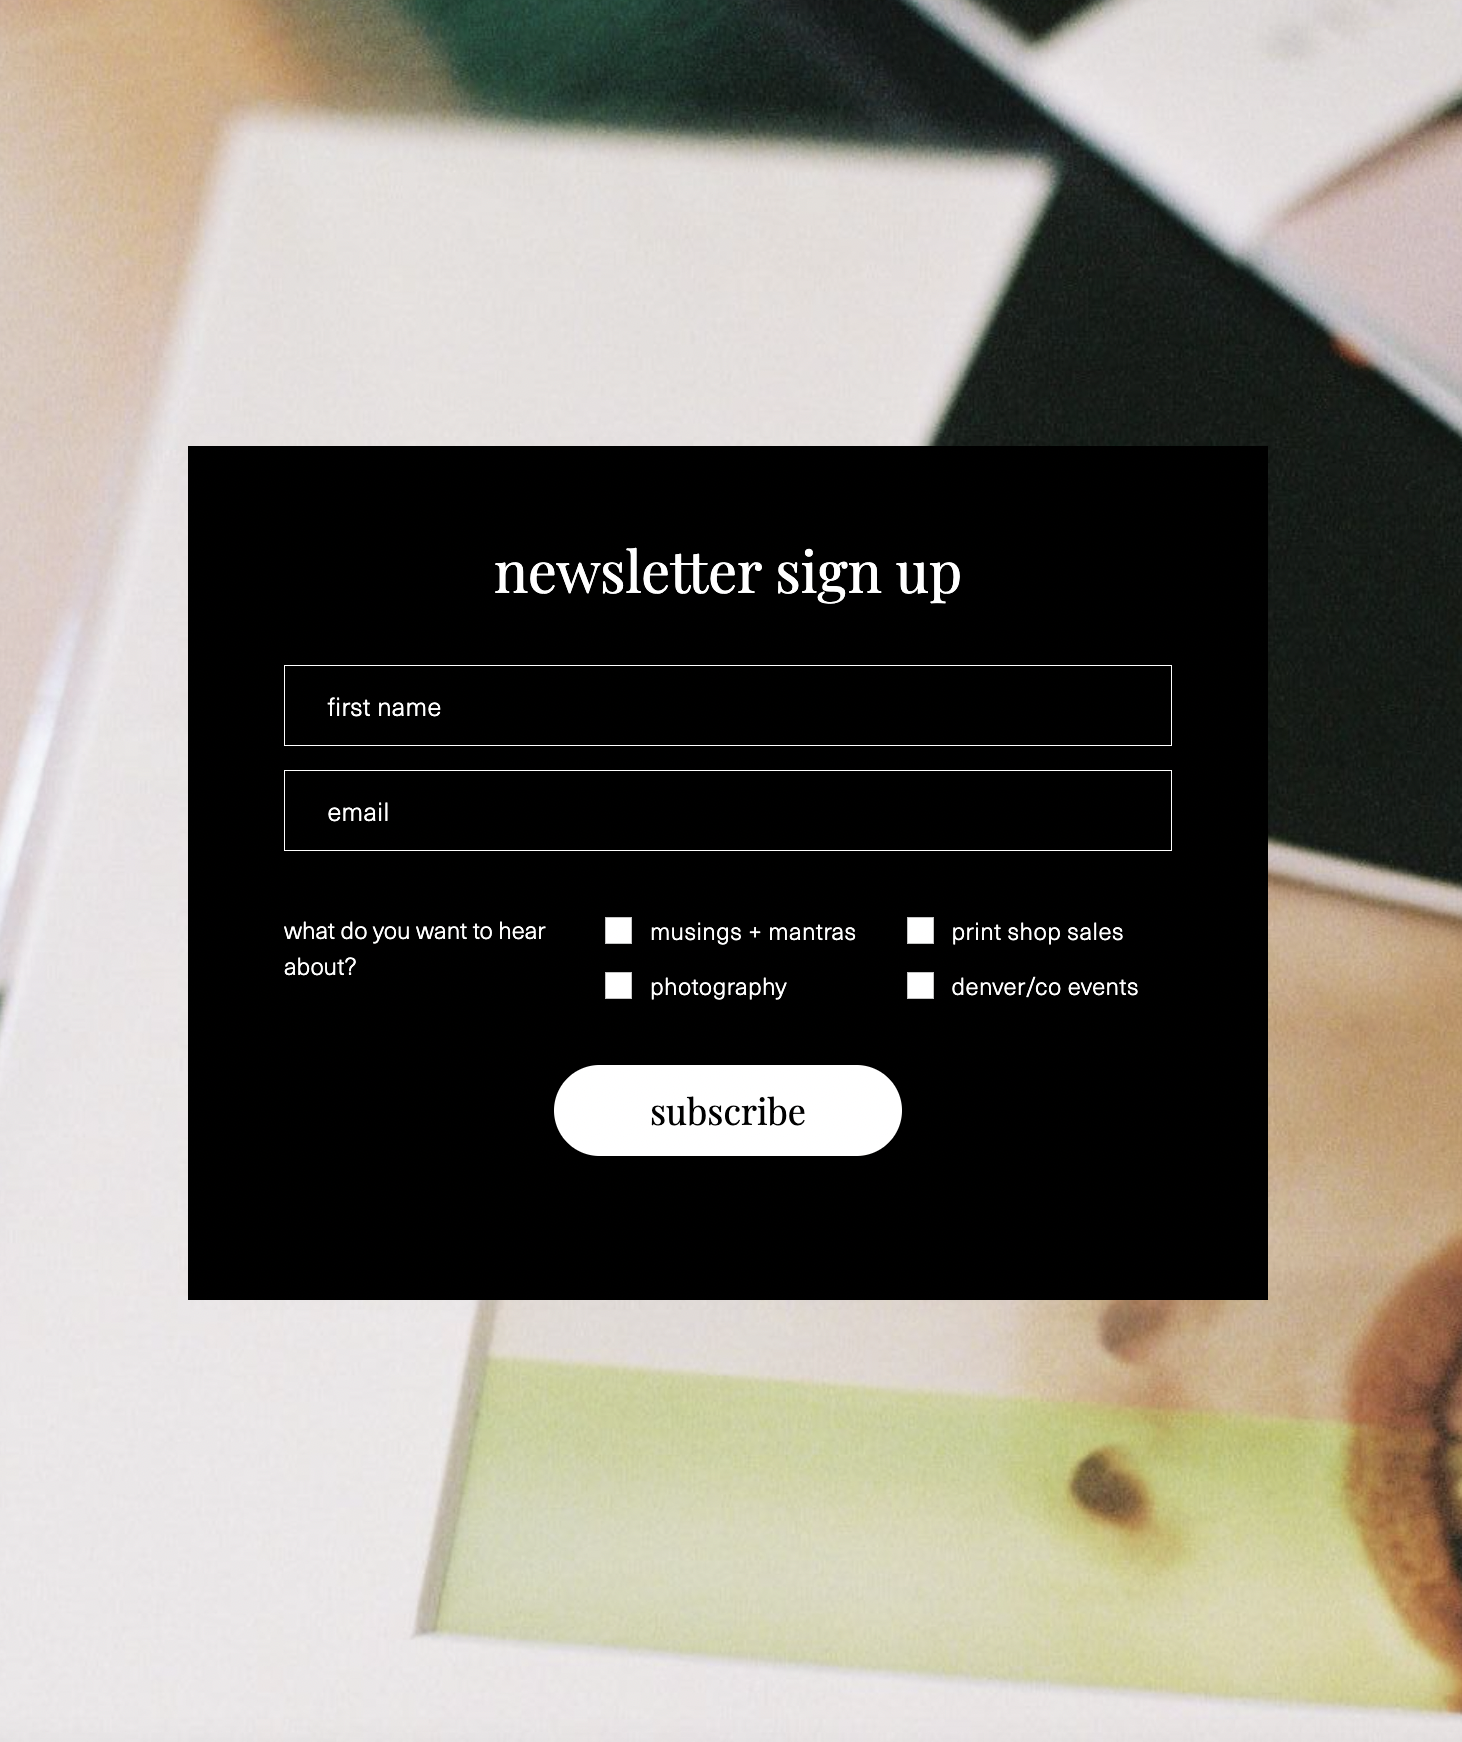 image of newsletter signup form